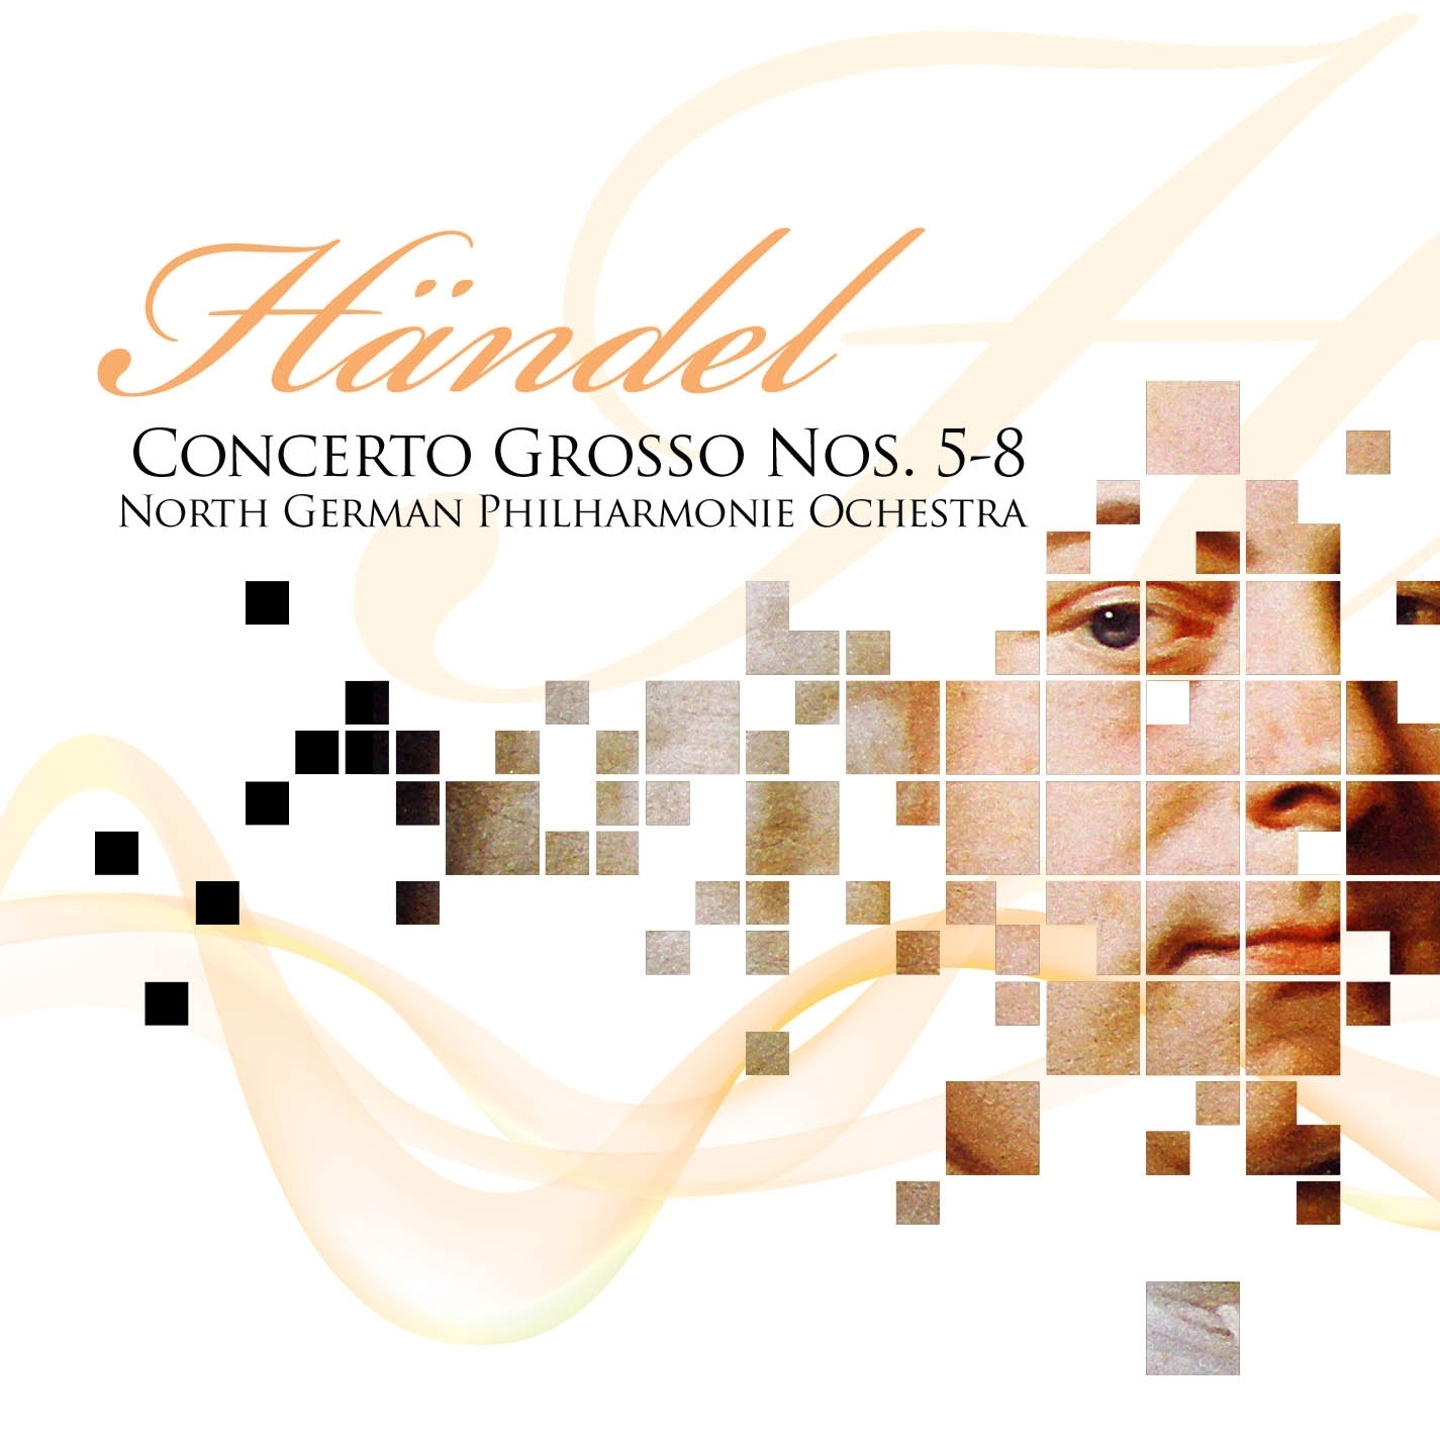 Concerto Grosso No. 5, in D Major, Op. 6 : Allegro